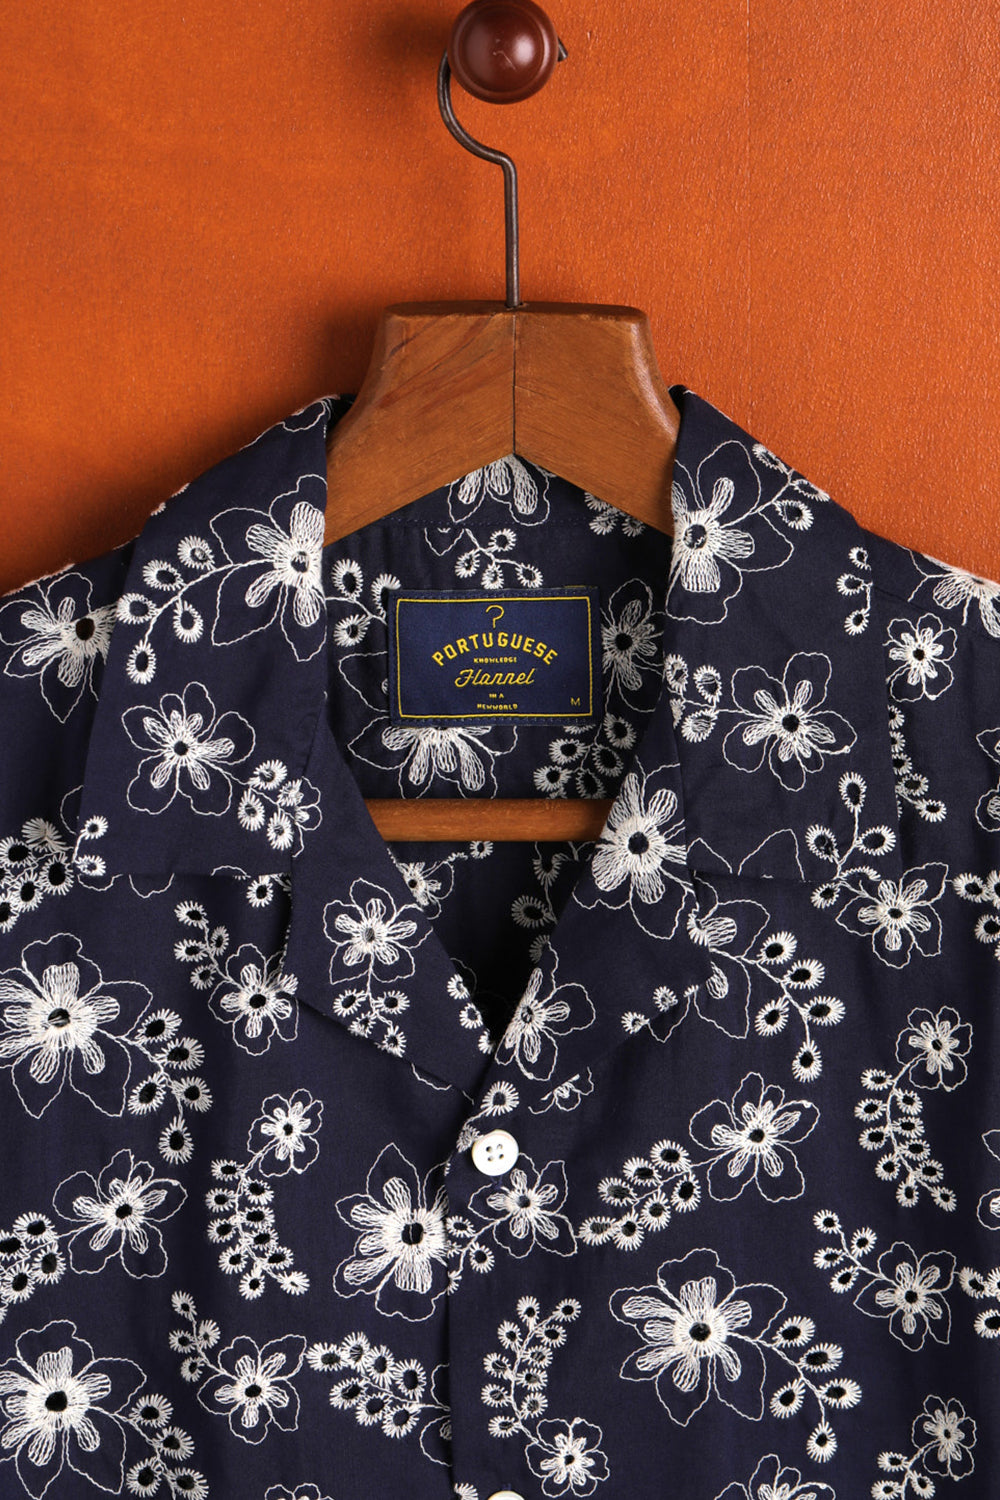 Portuguese Flannel Folclore 4 Shirt (Navy)